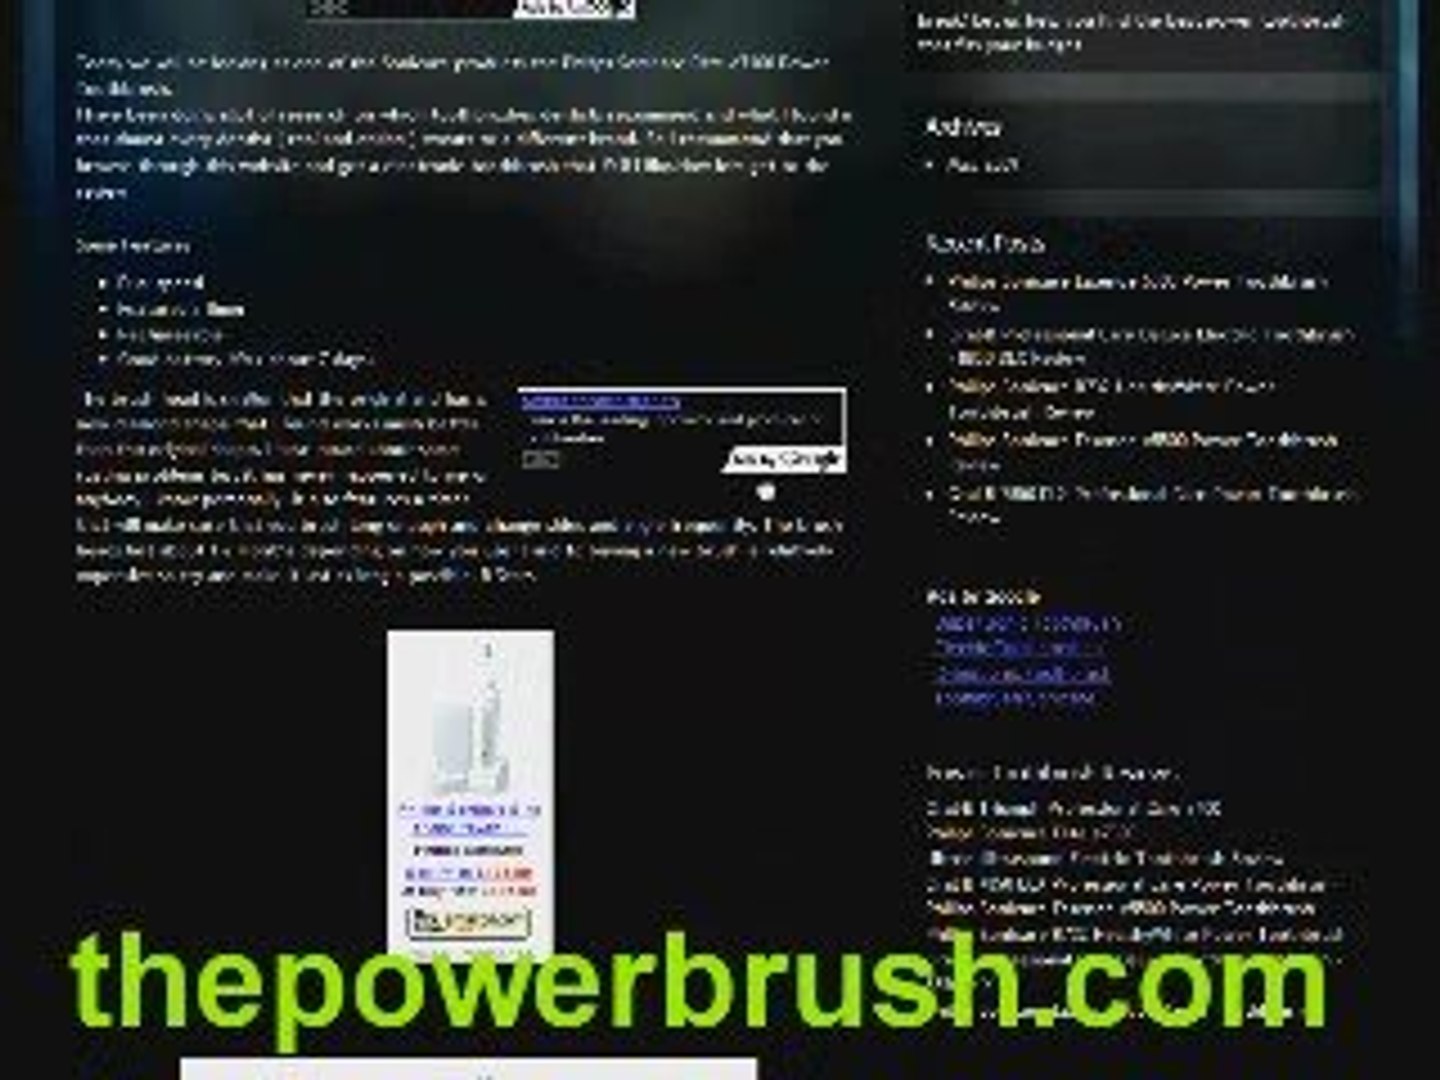 Buy electronic toothbrush